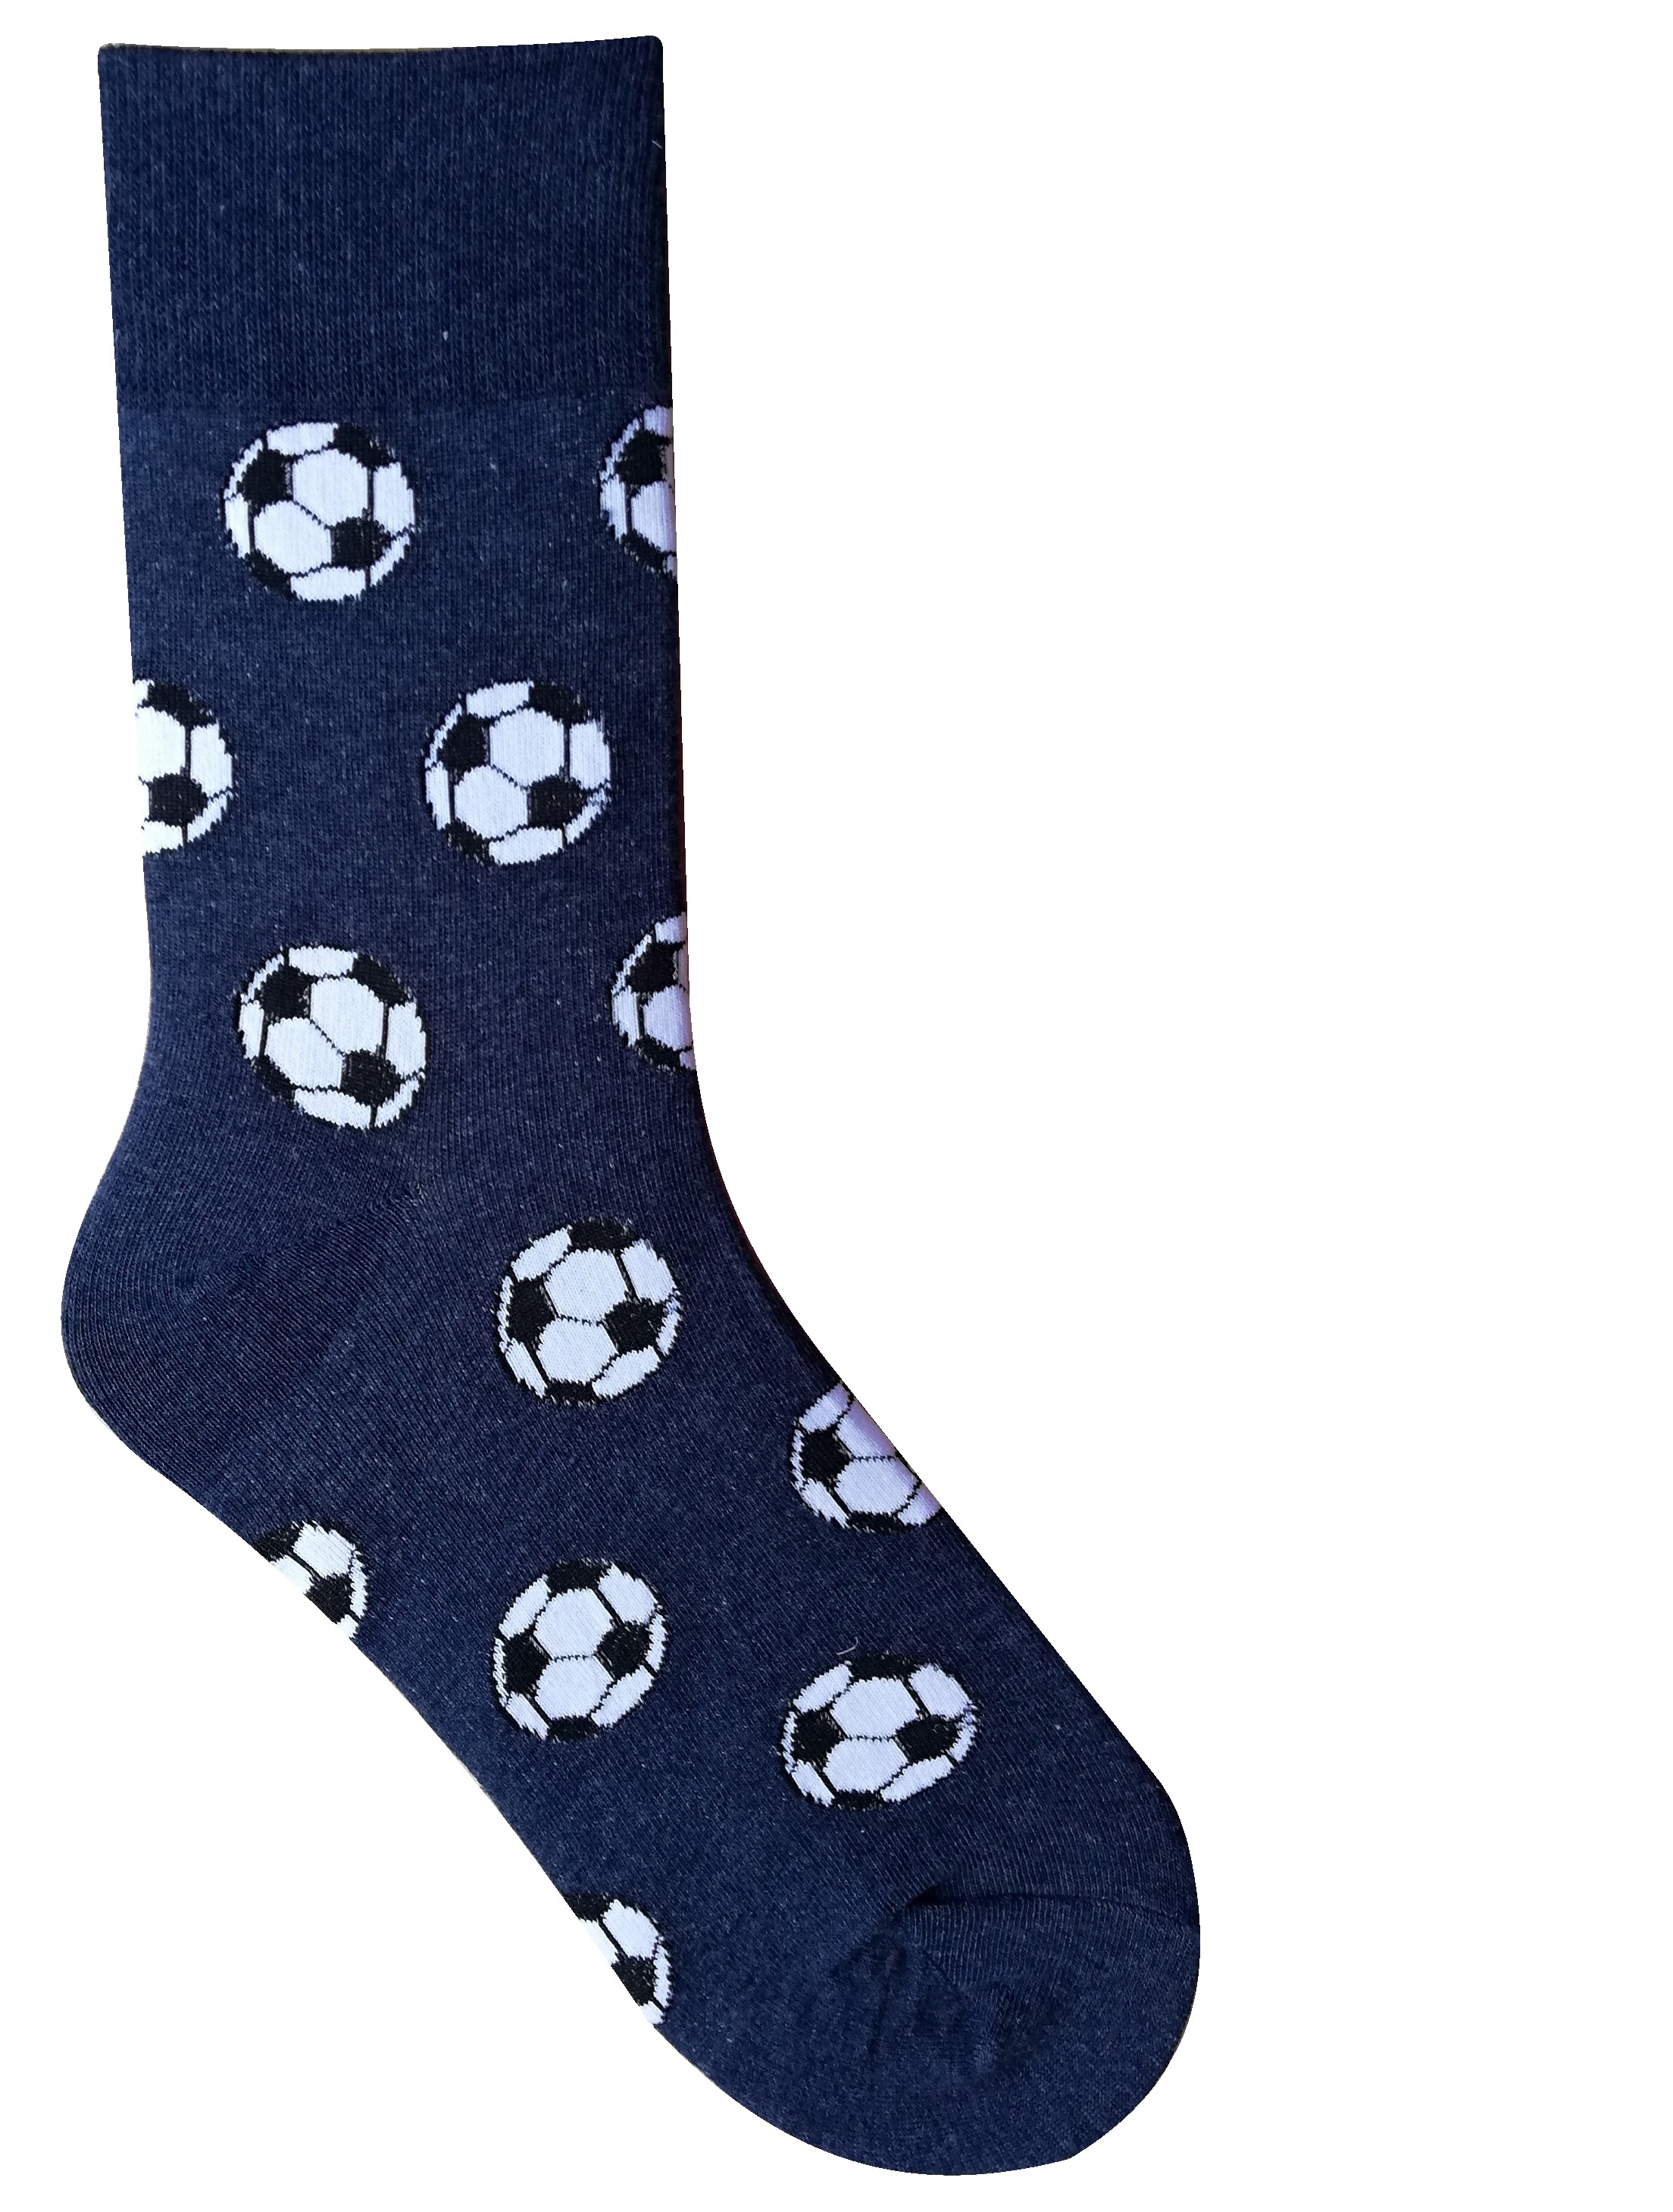 Fussball Socken ***** Gr.36-41/42-47